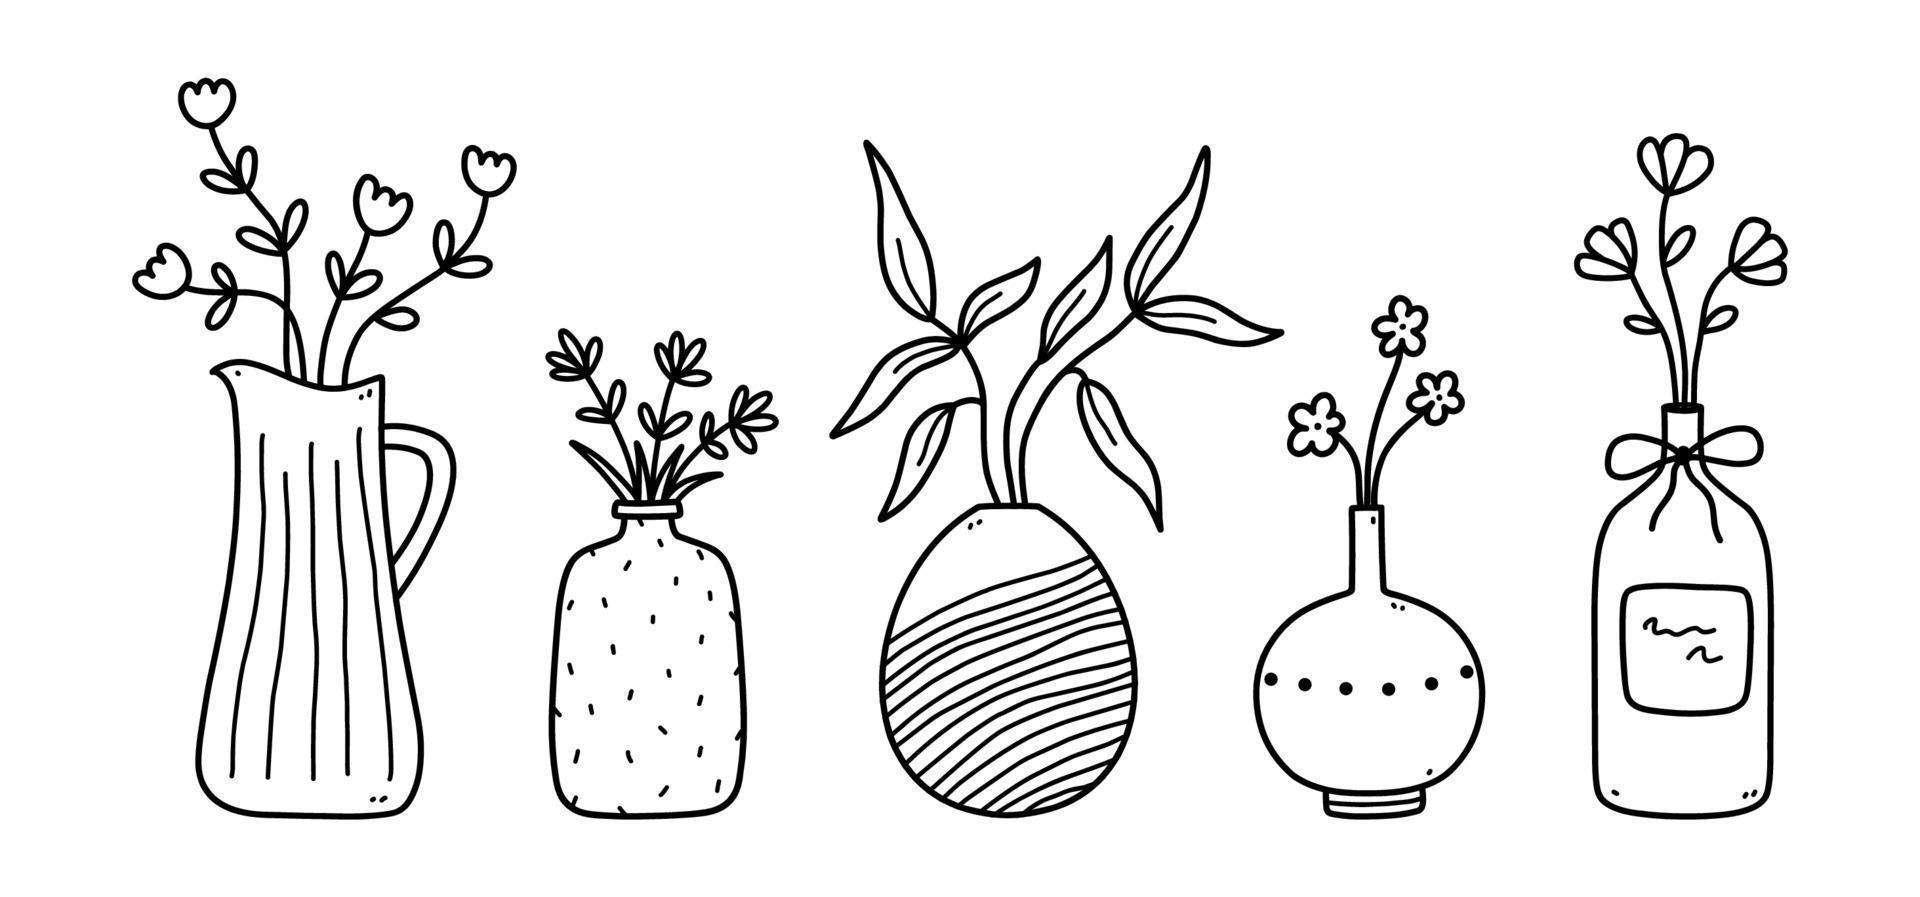 Reihe von niedlichen Blumen und Zweigen in Keramikvasen isoliert auf weißem Hintergrund. handgezeichnete Vektorgrafik im Doodle-Stil. perfekt für karten, dekorationen, logo. vektor